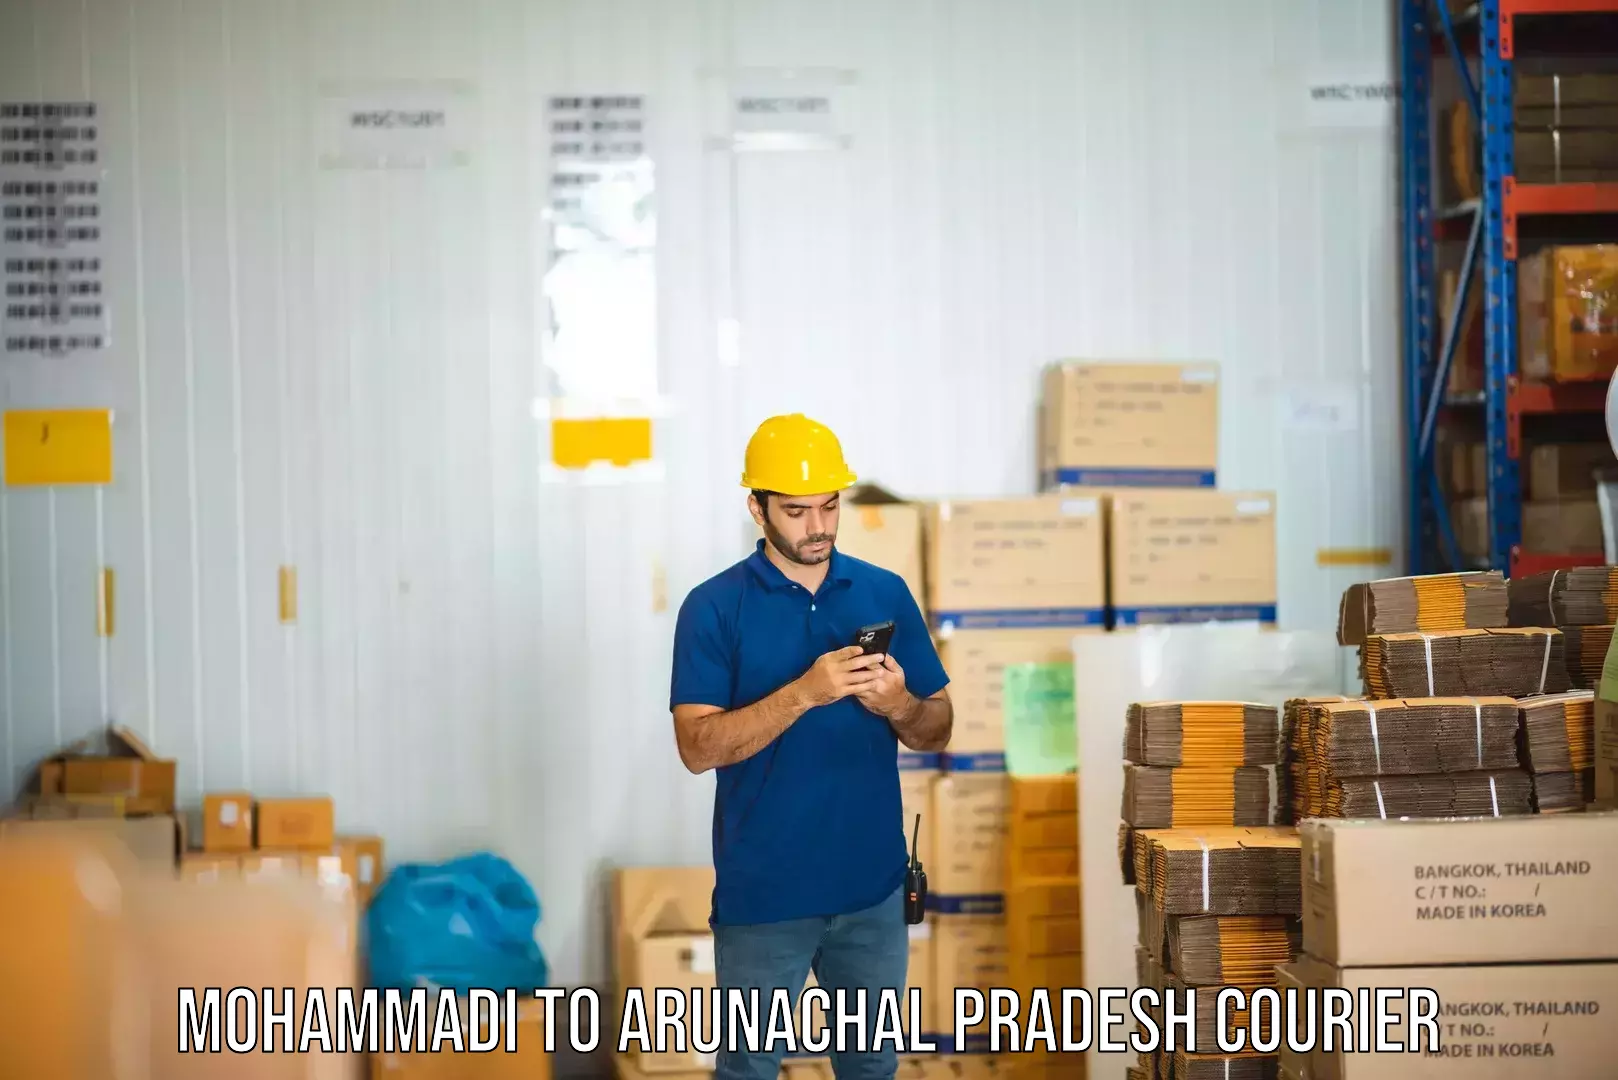 Efficient parcel service Mohammadi to Arunachal Pradesh